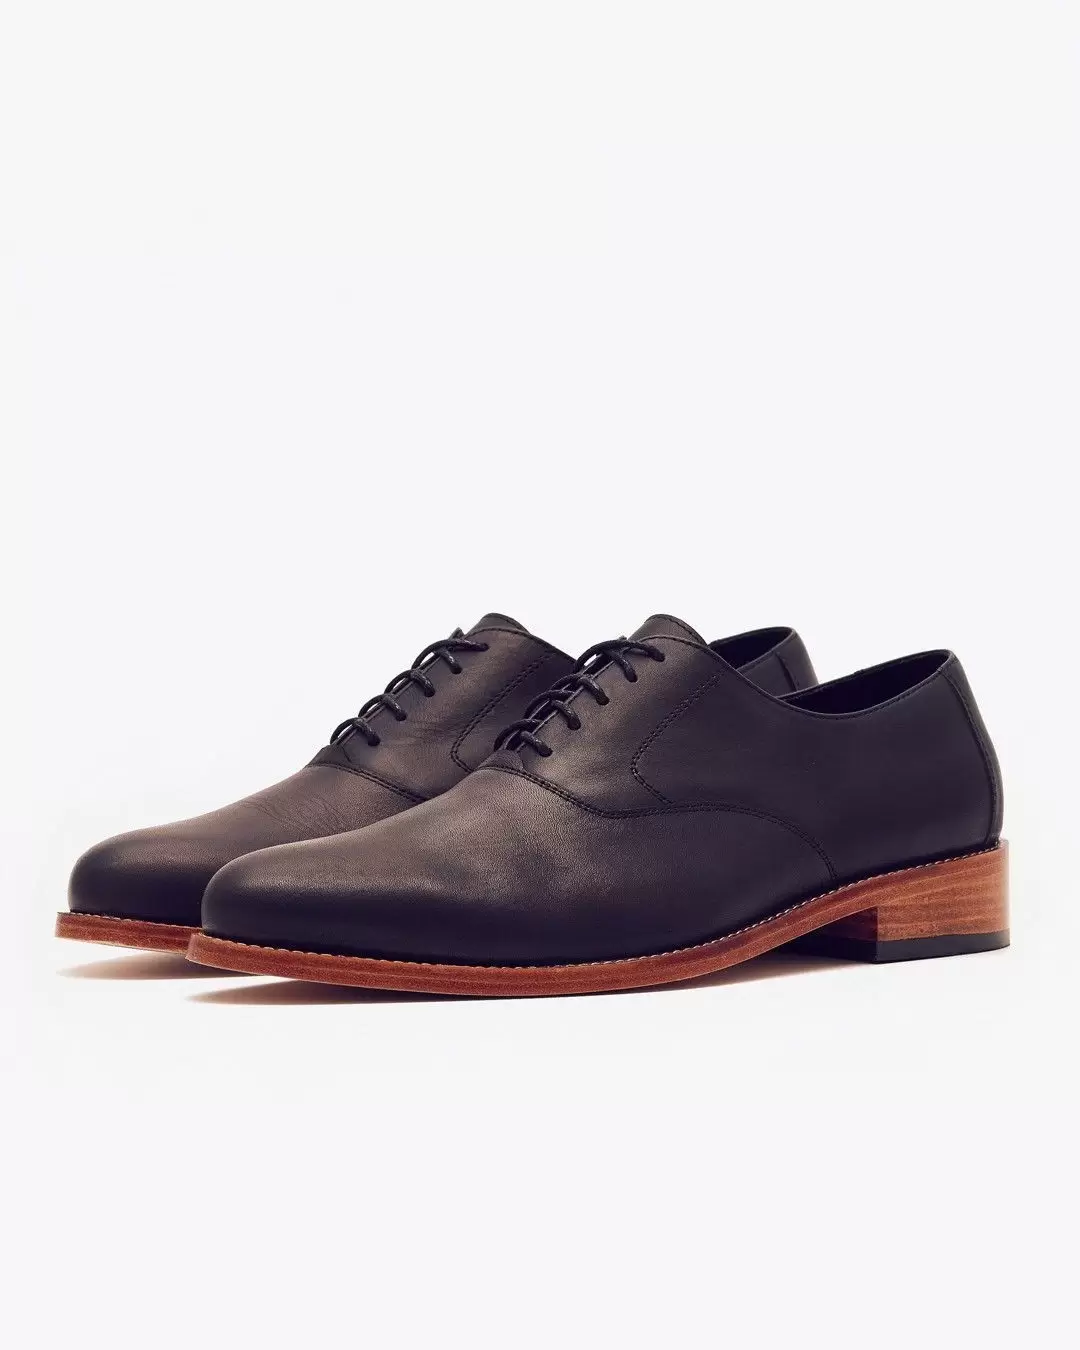 Nisolo Men's Calano Leather Oxford - 30% off 